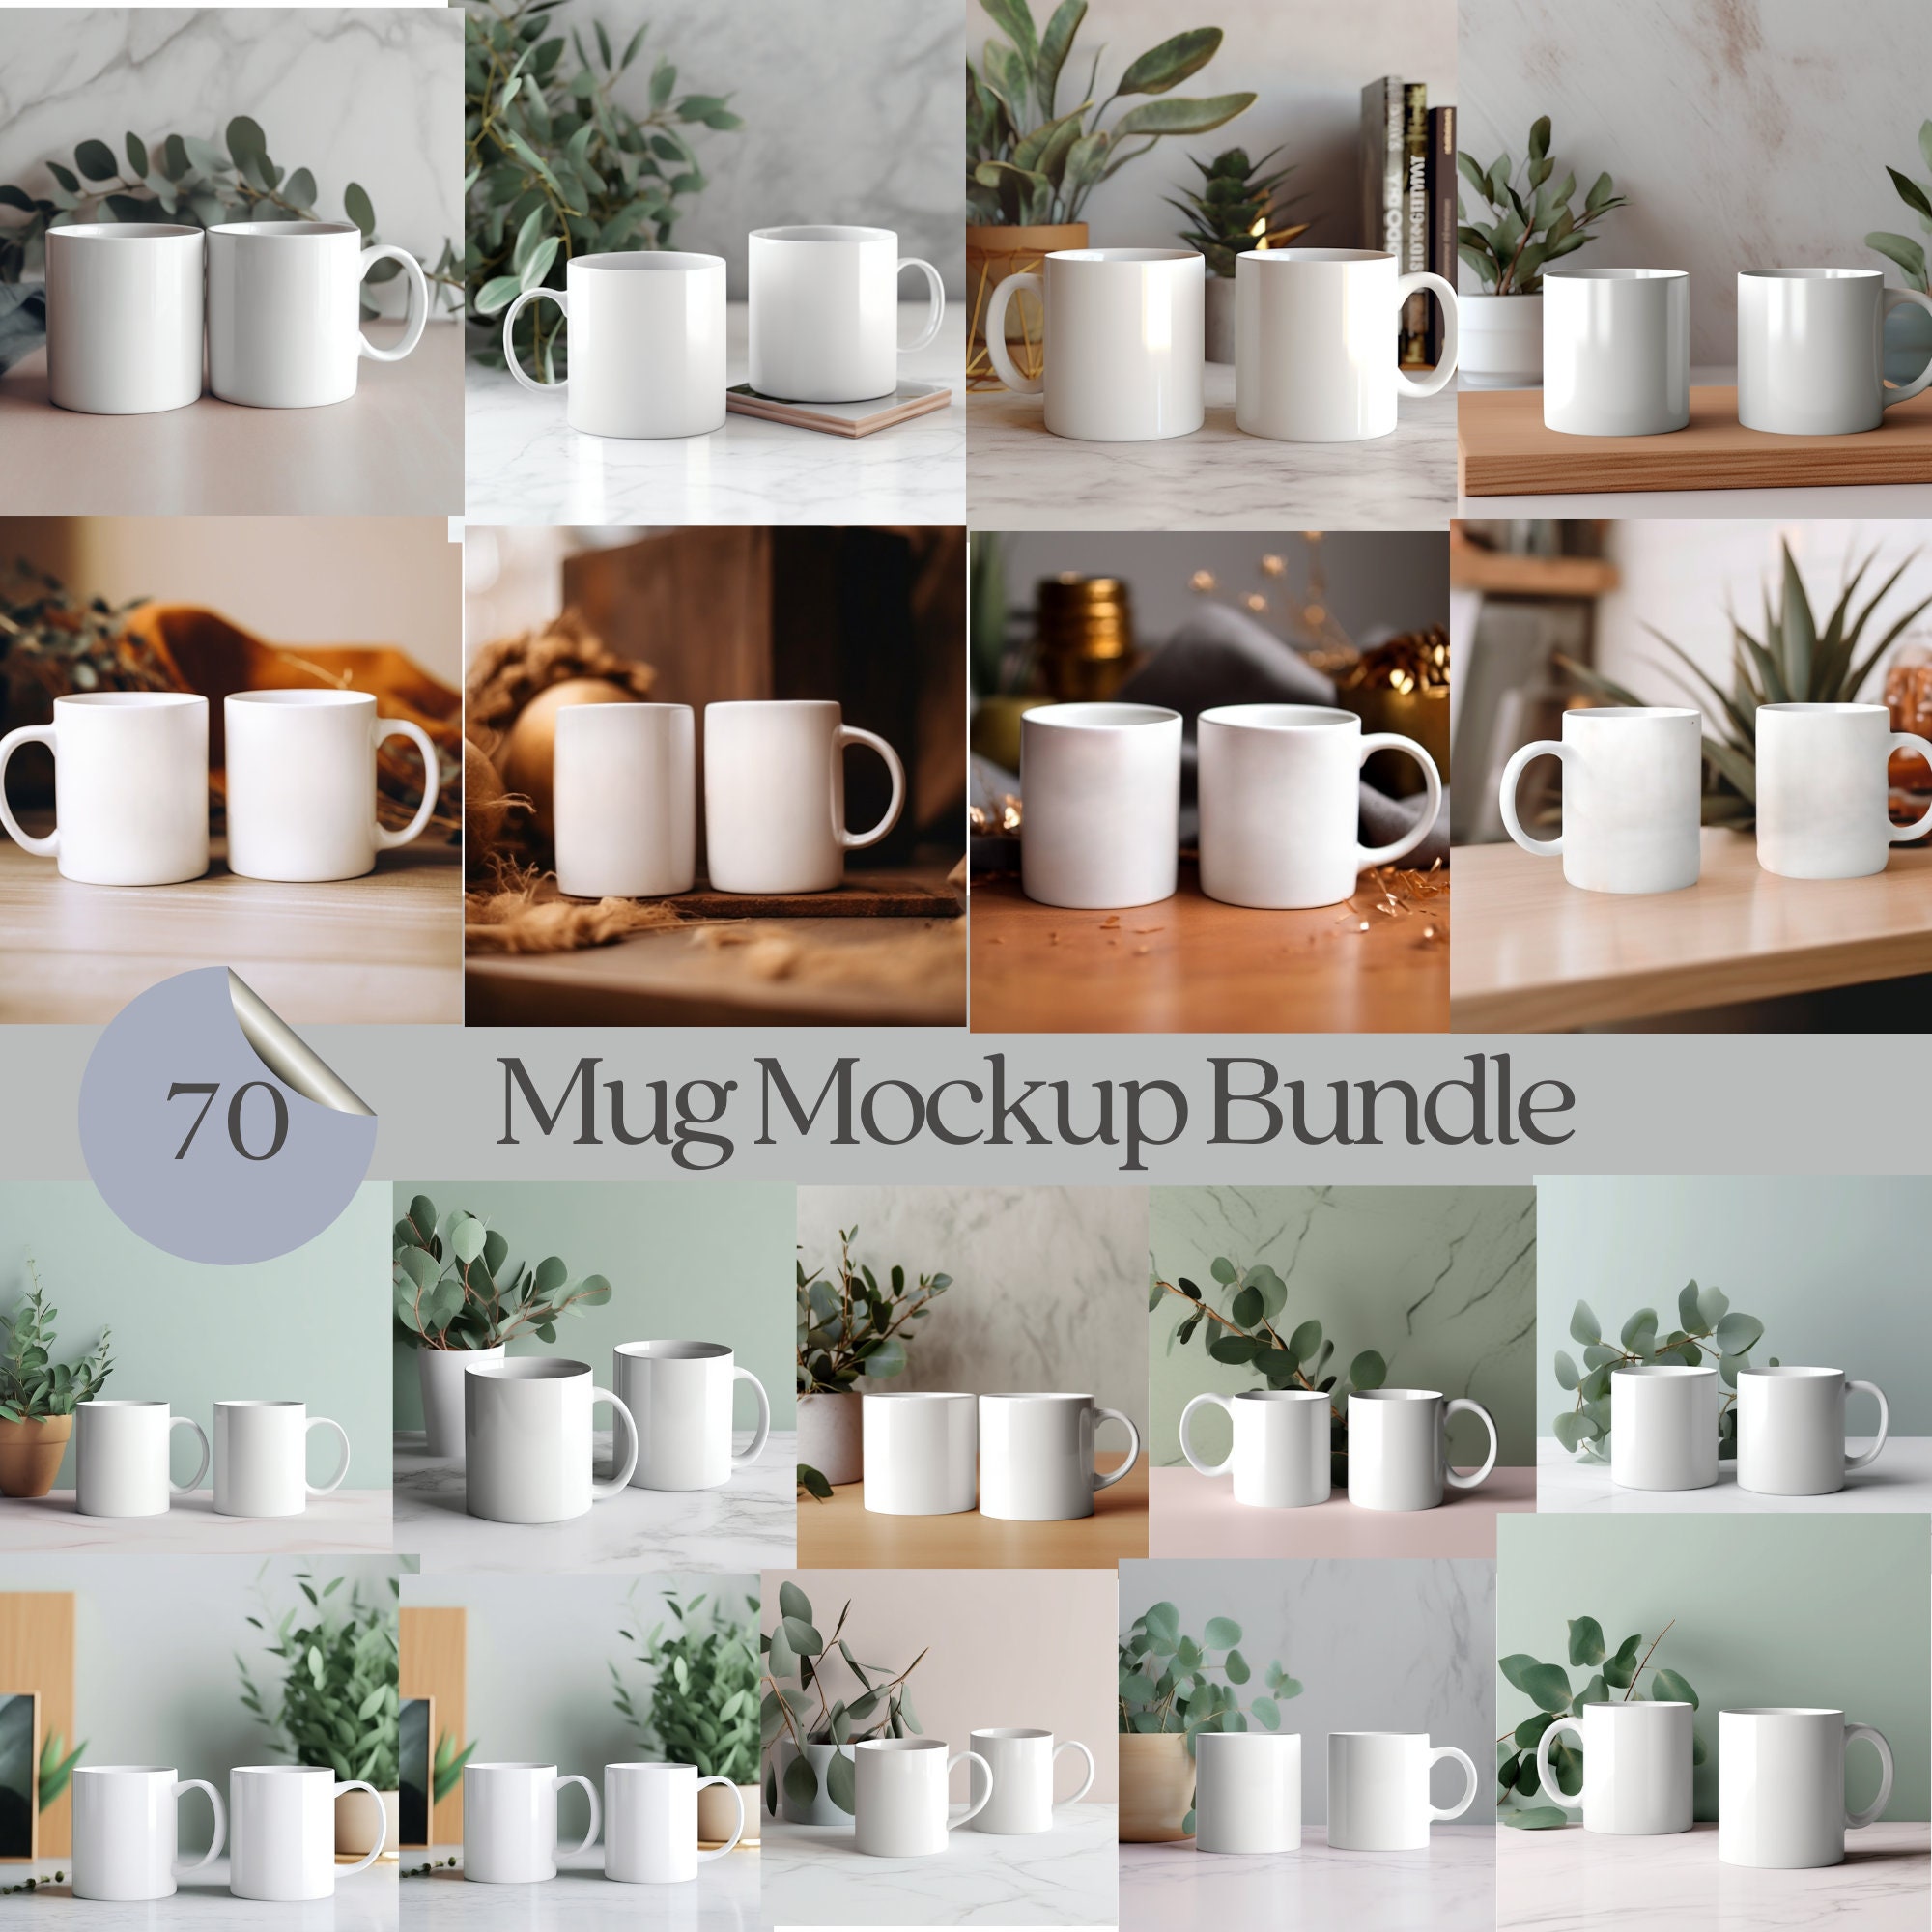 Double Mug Mockup: Showcase Your Designs With Our 11 Oz Mock Ups  Minimalistic Boho Mug Mockup Bundle 